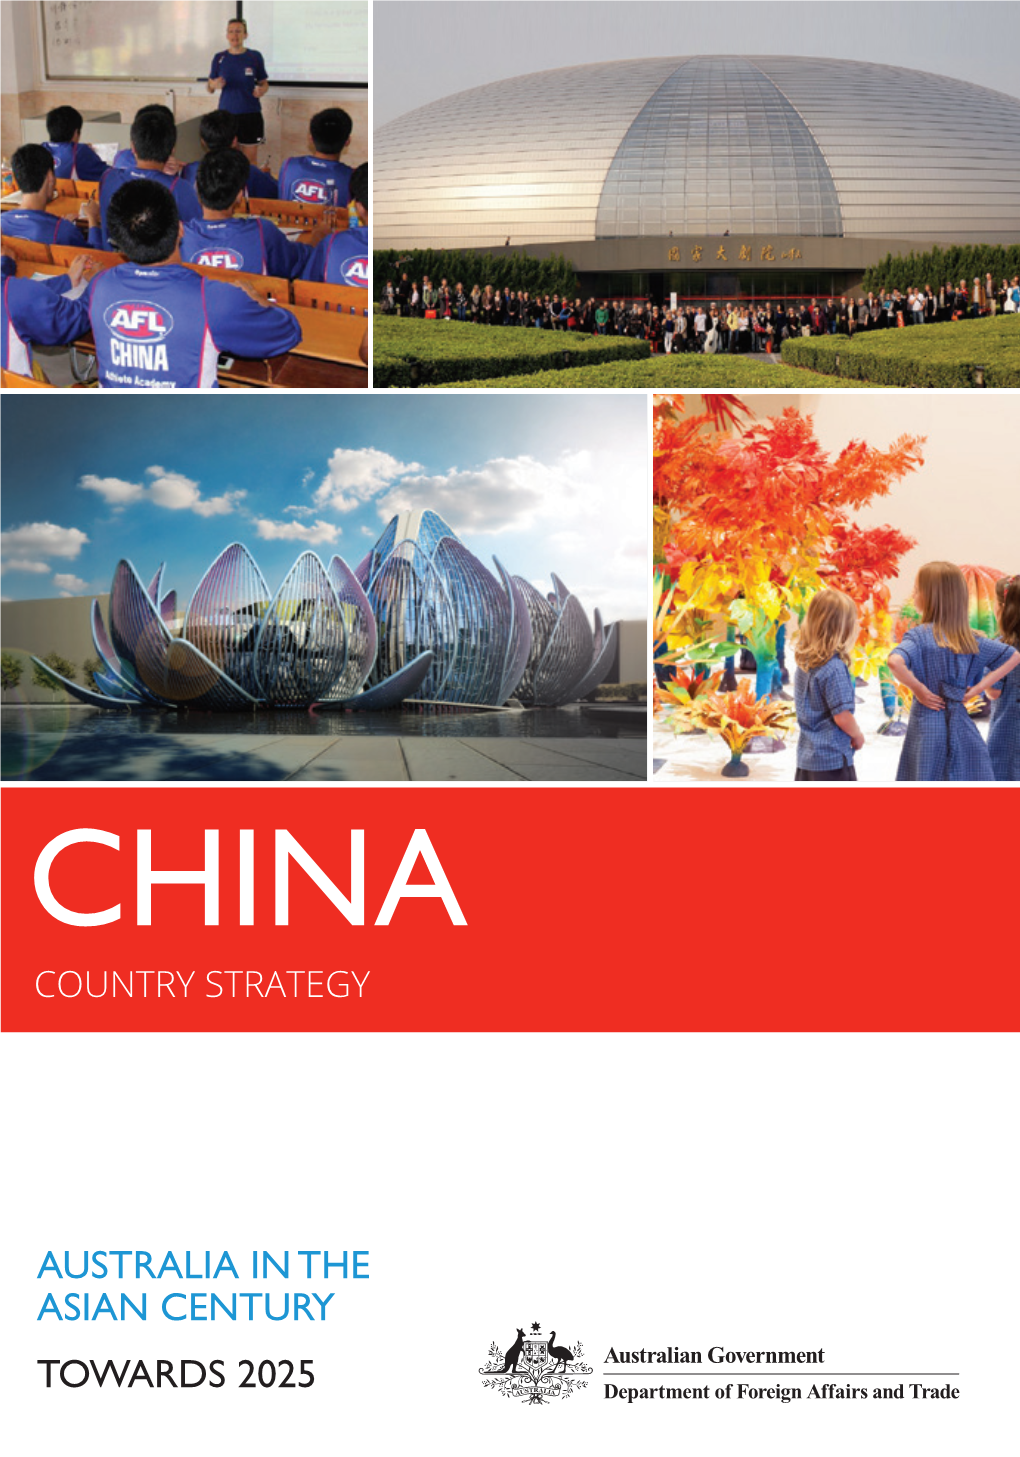 Towards 2025 Australia in the Asian Century